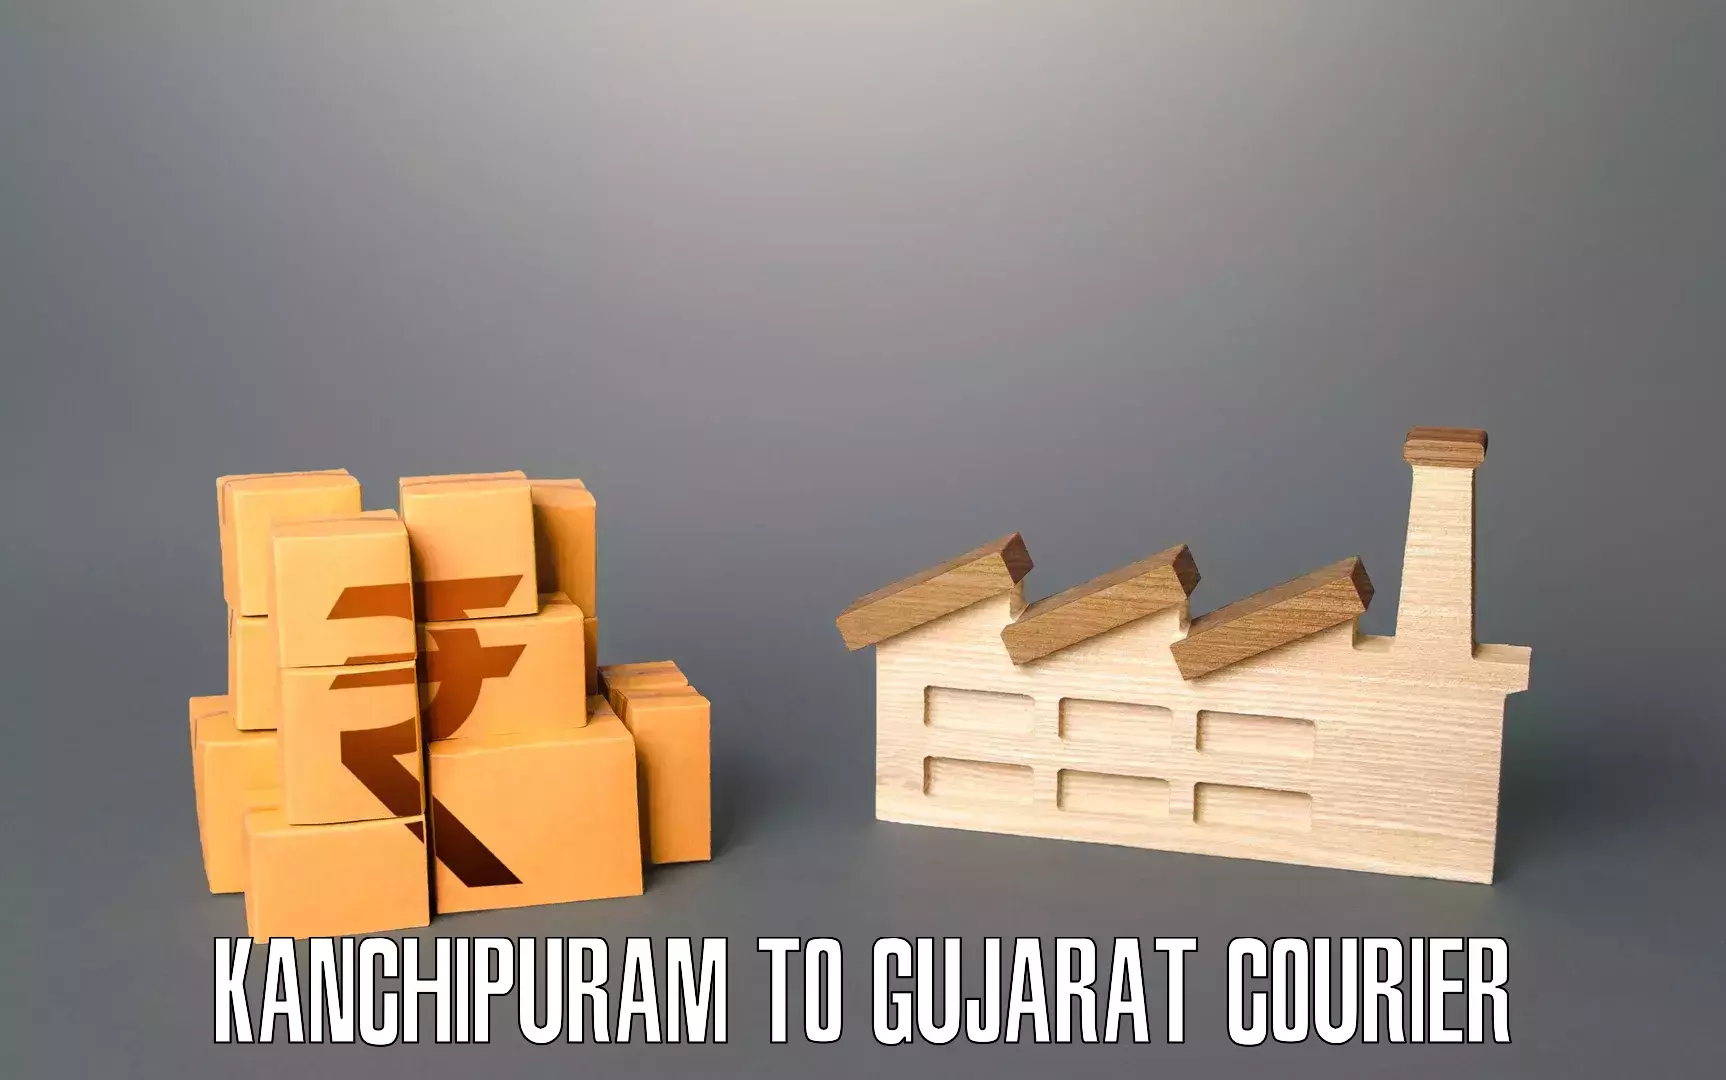 Furniture transport experts Kanchipuram to Gujarat